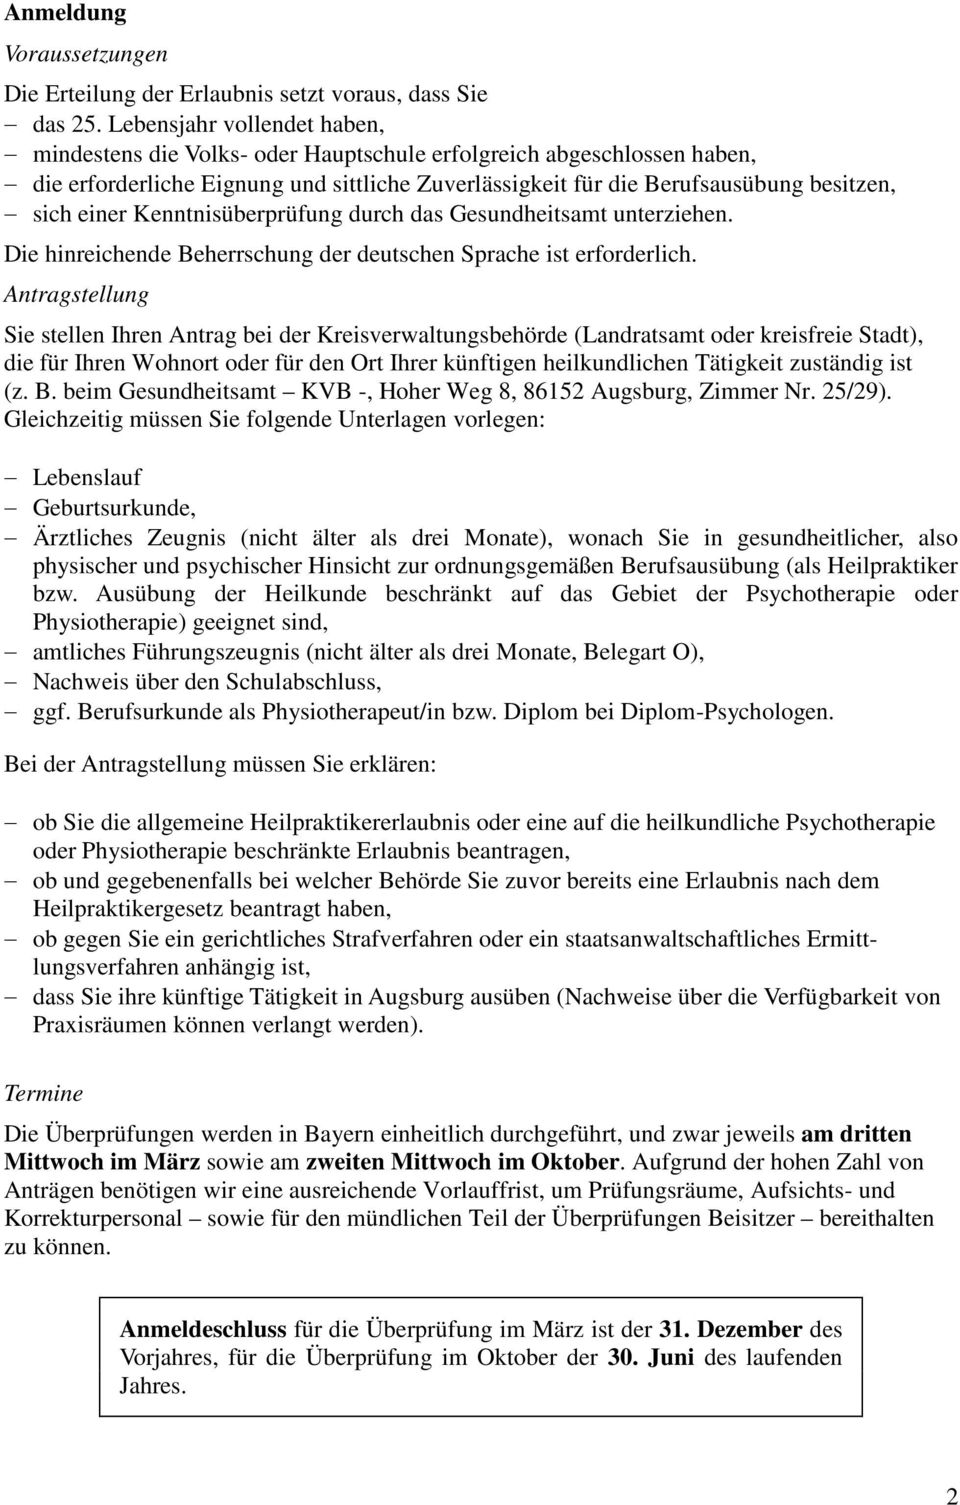 Kenntnisüberprüfung durch das Gesundheitsamt unterziehen. Die hinreichende Beherrschung der deutschen Sprache ist erforderlich.